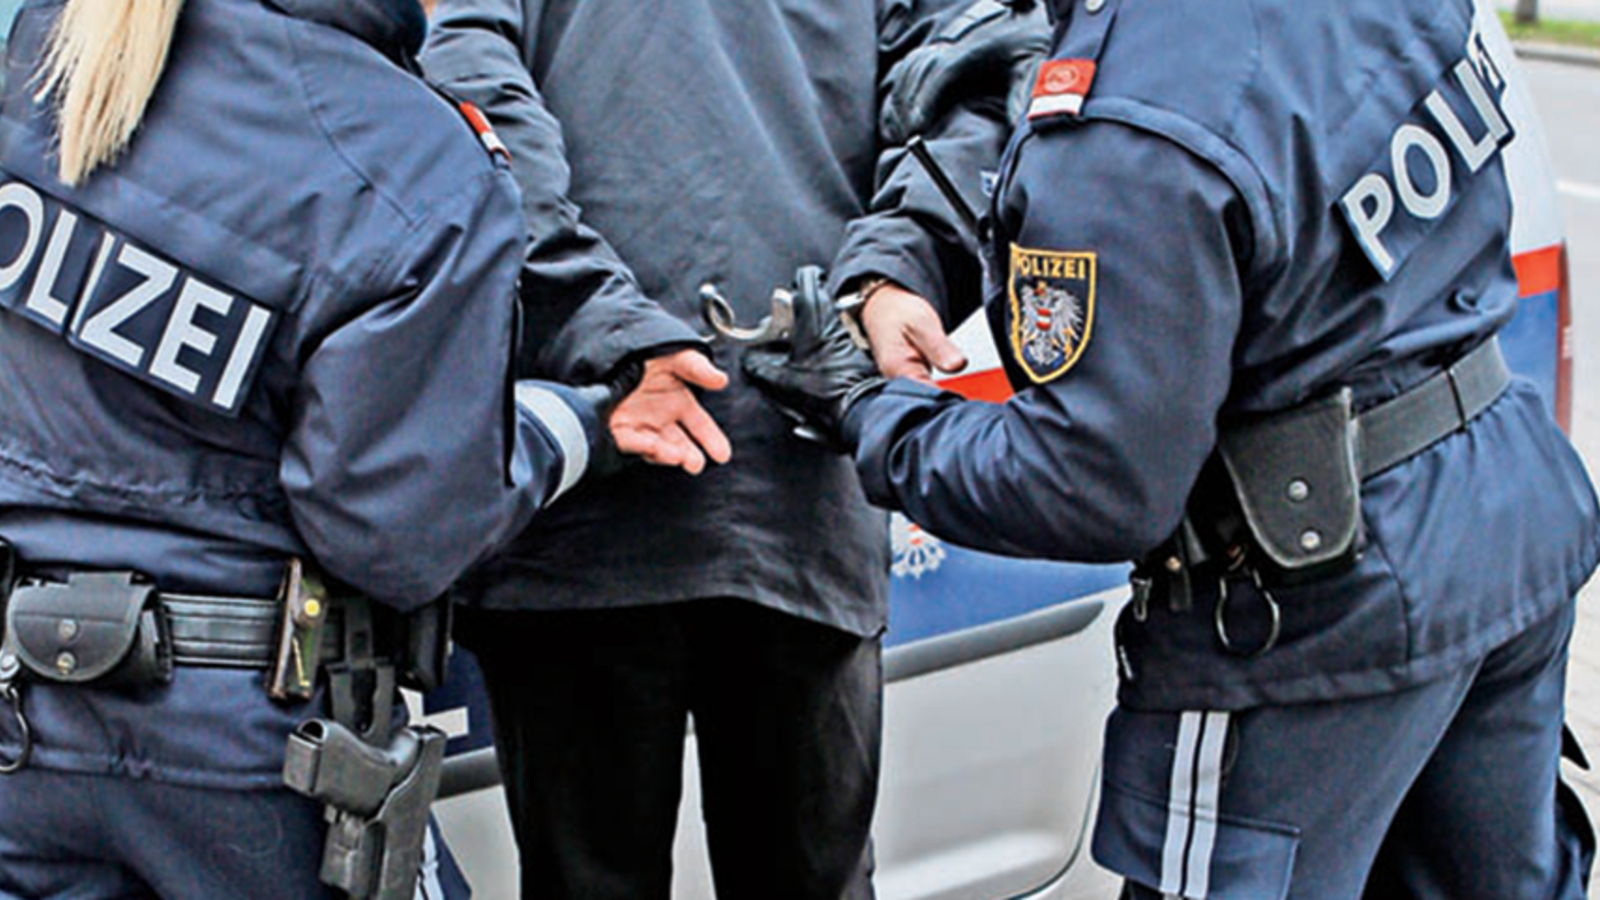 Zwei Polizisten bei einer Festnahme am Wiener Gürtel verletzt - Polizei  News 